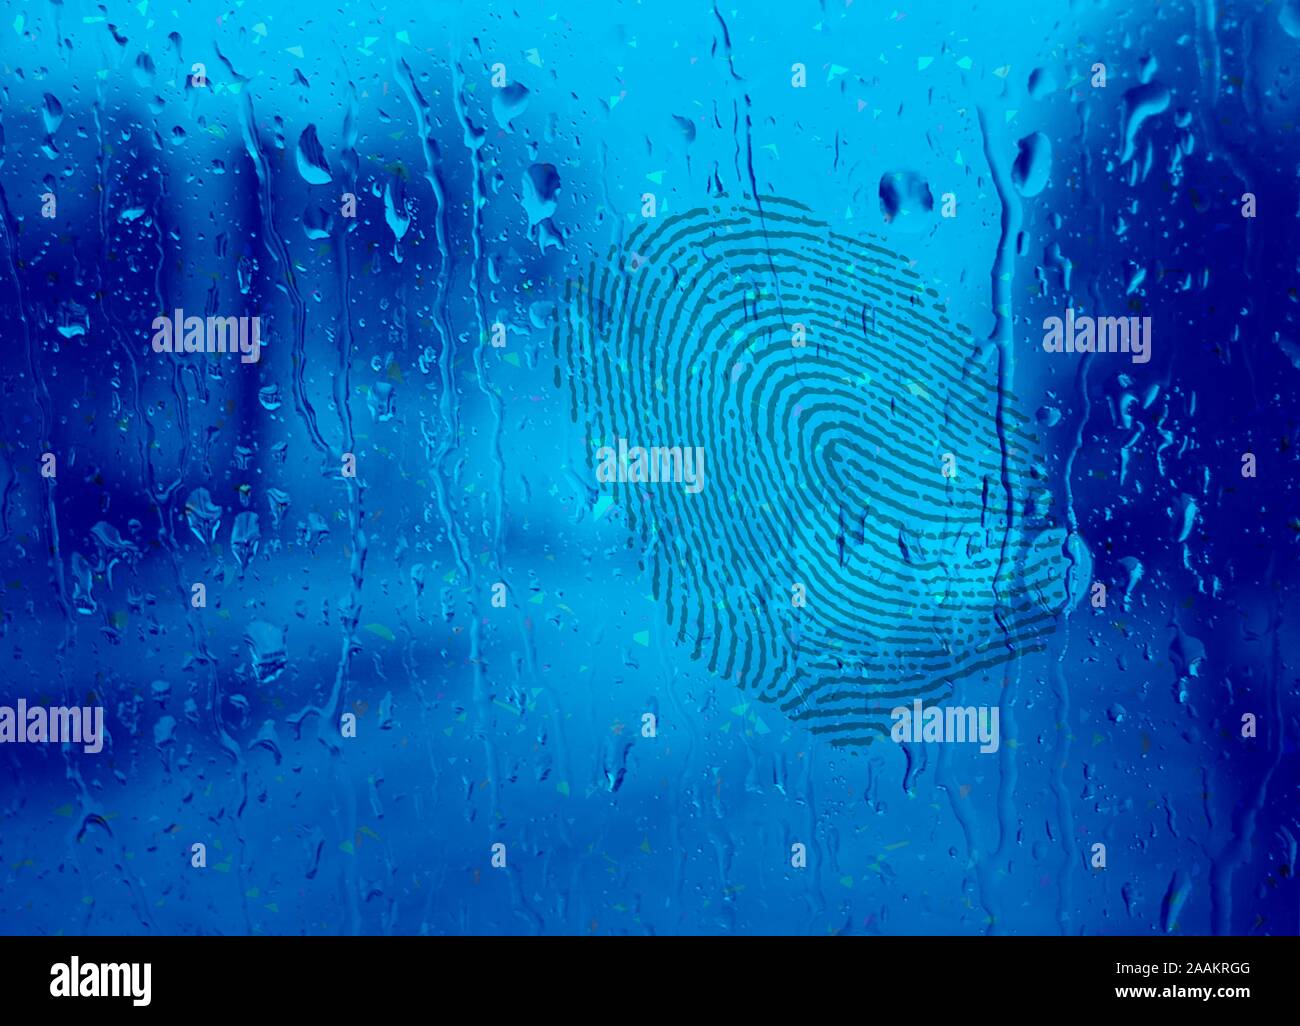 Empreinte digitale sur verre humide, illustration Banque D'Images